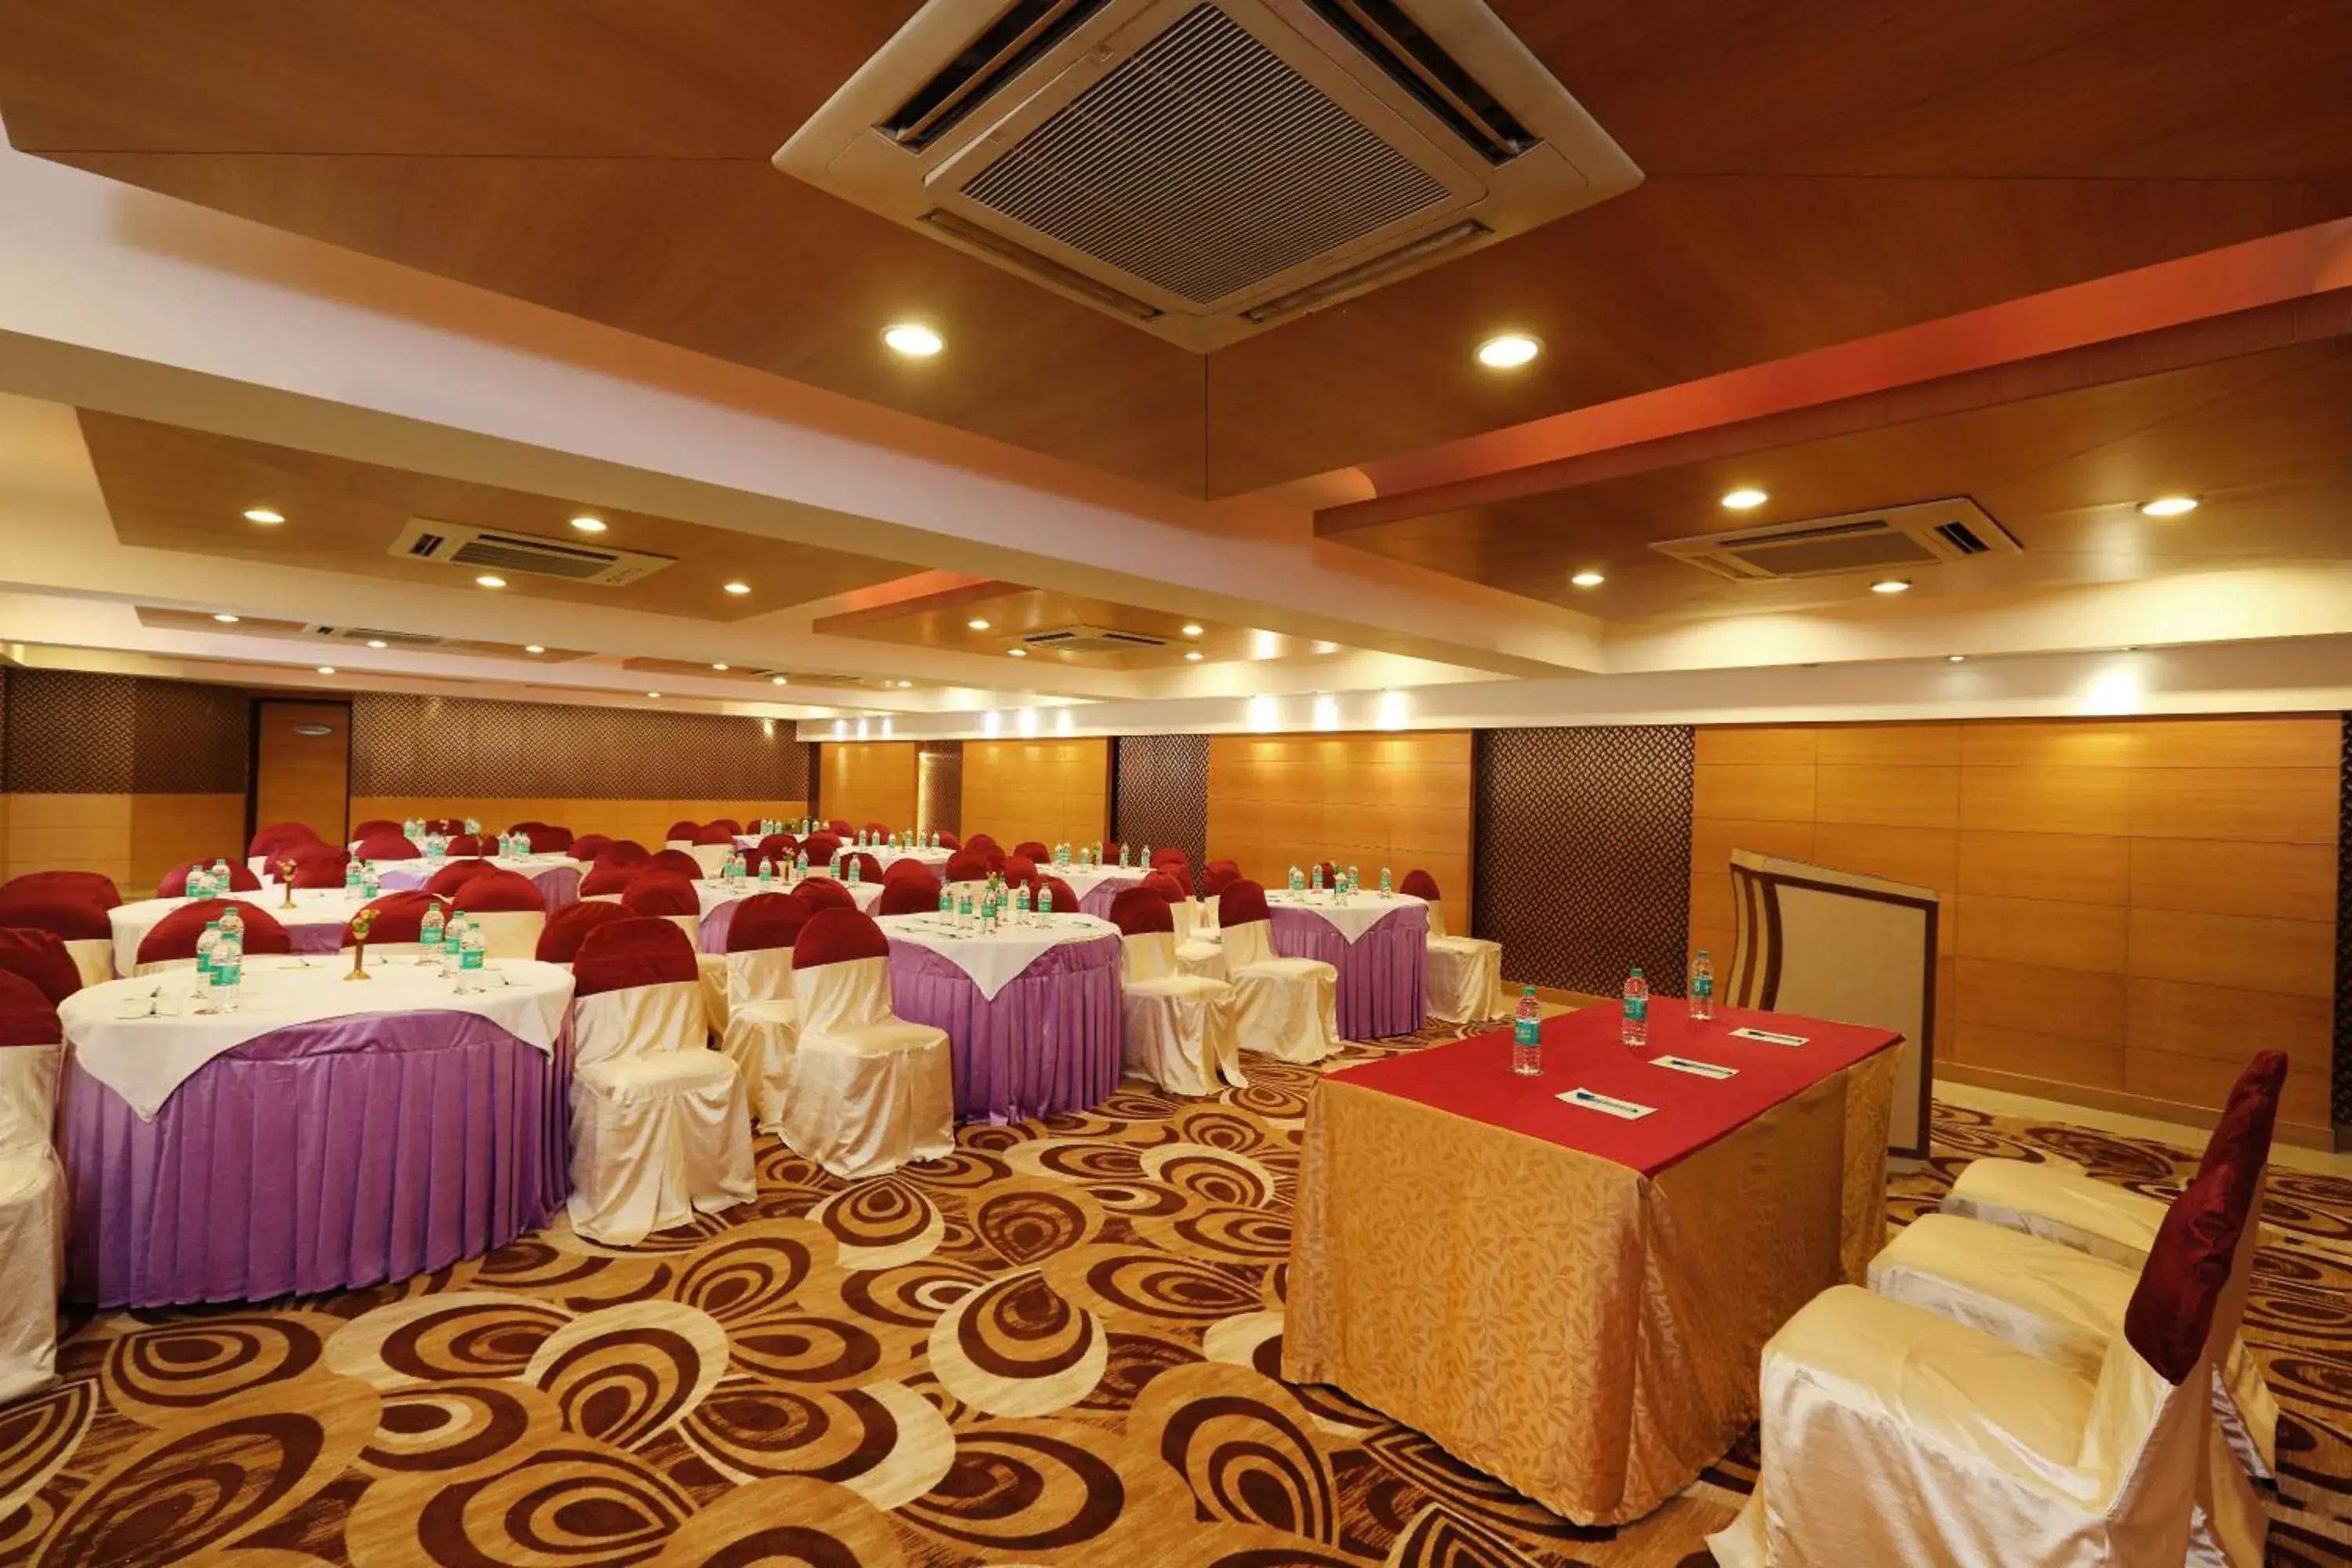 Banquet/Function facilities, Banquet Facilities in Hotel Pai Vista